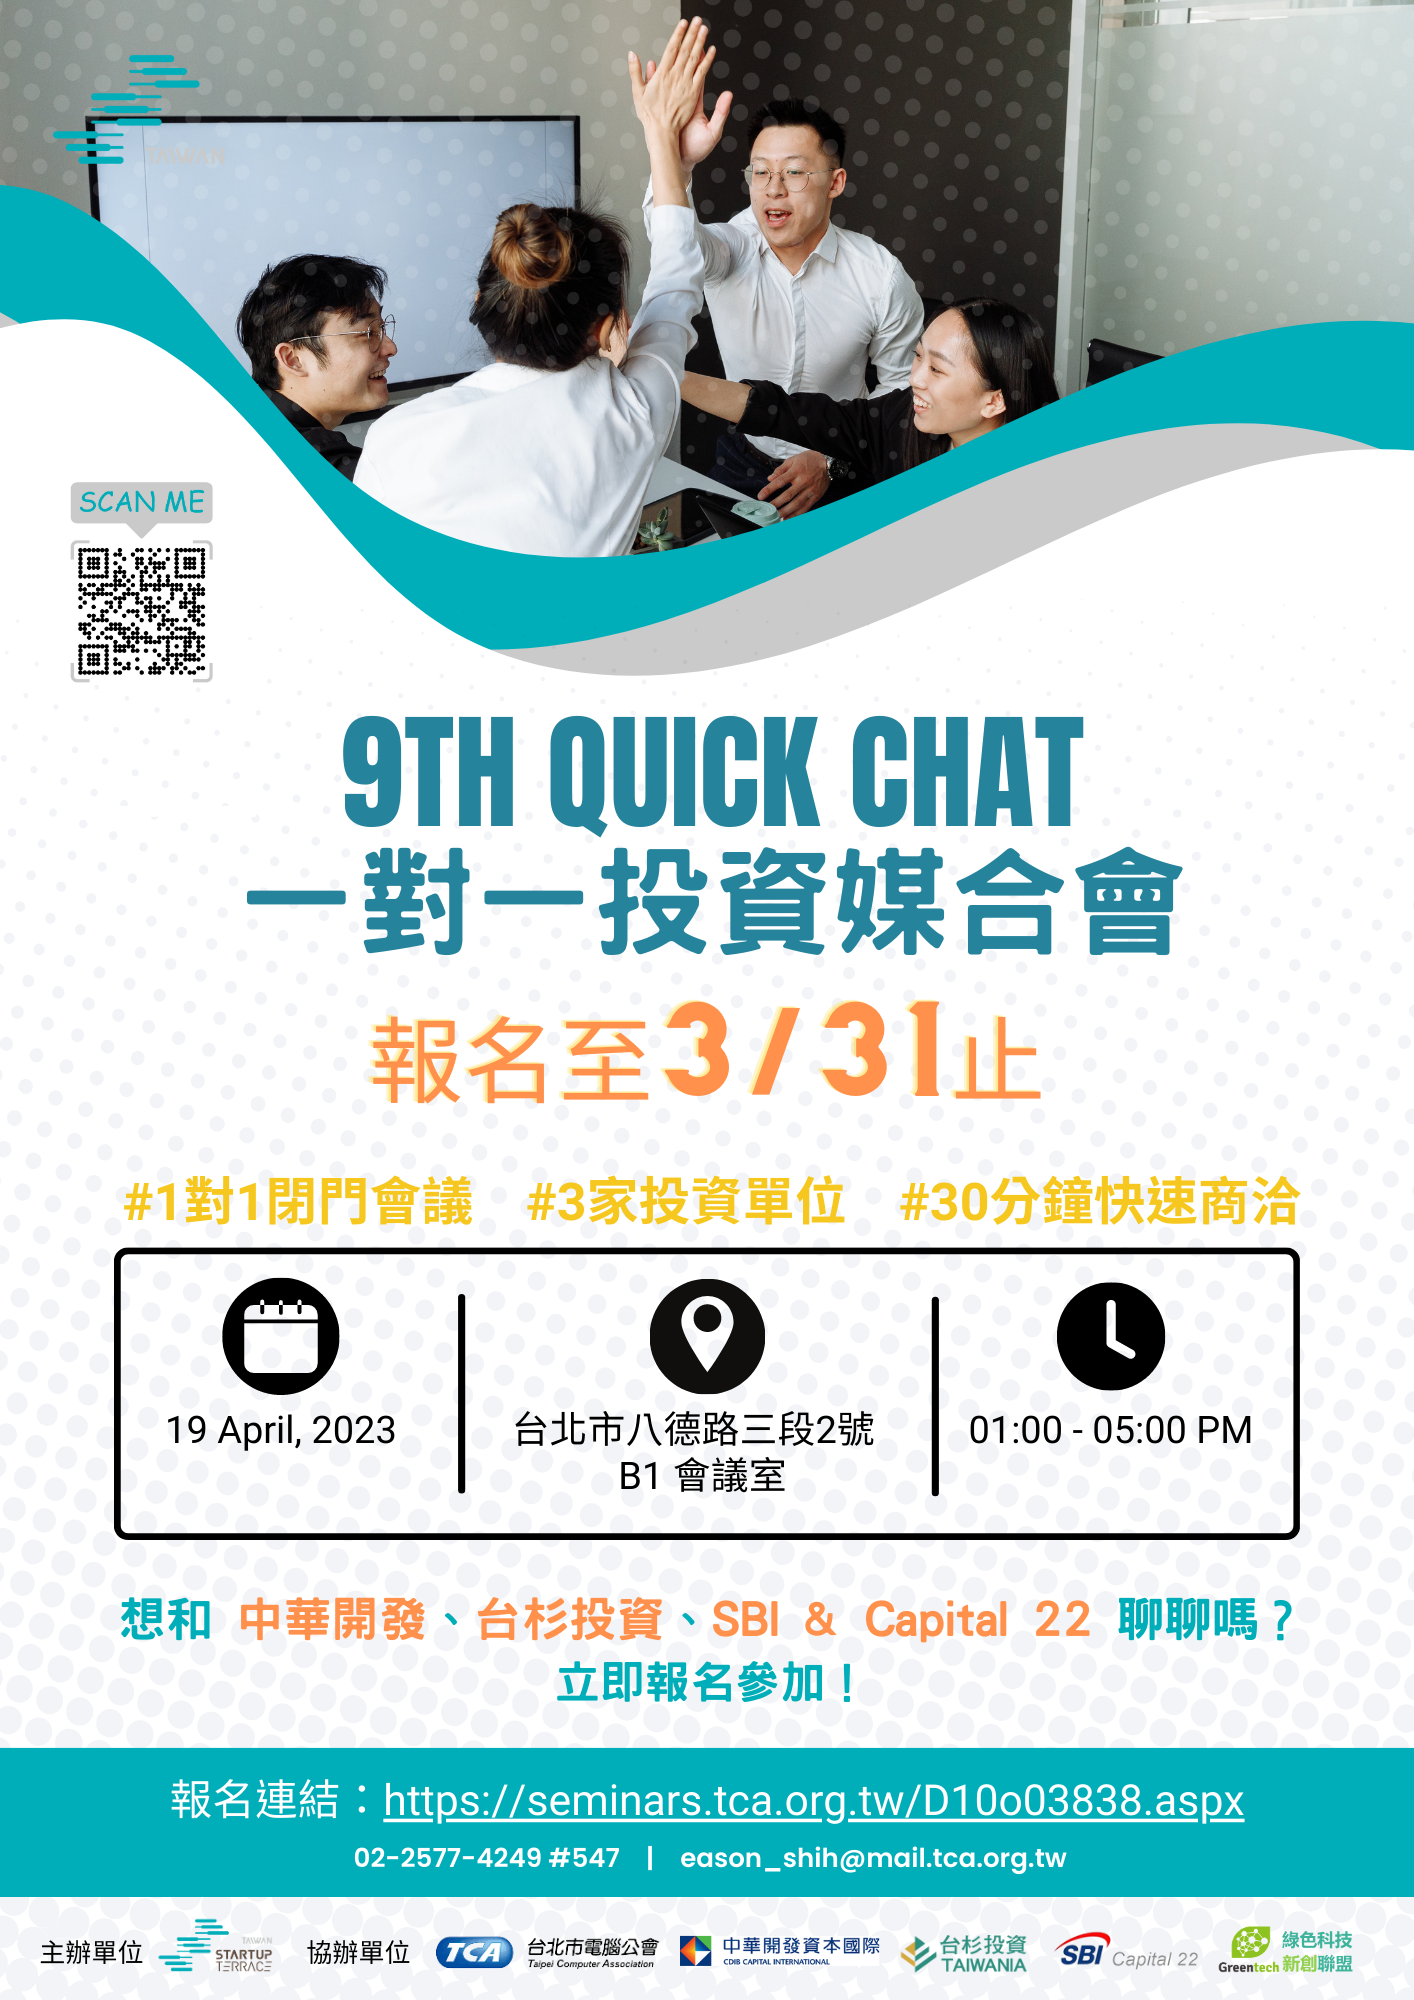 [活動]2023 9th Quick Chat一對一媒合活動